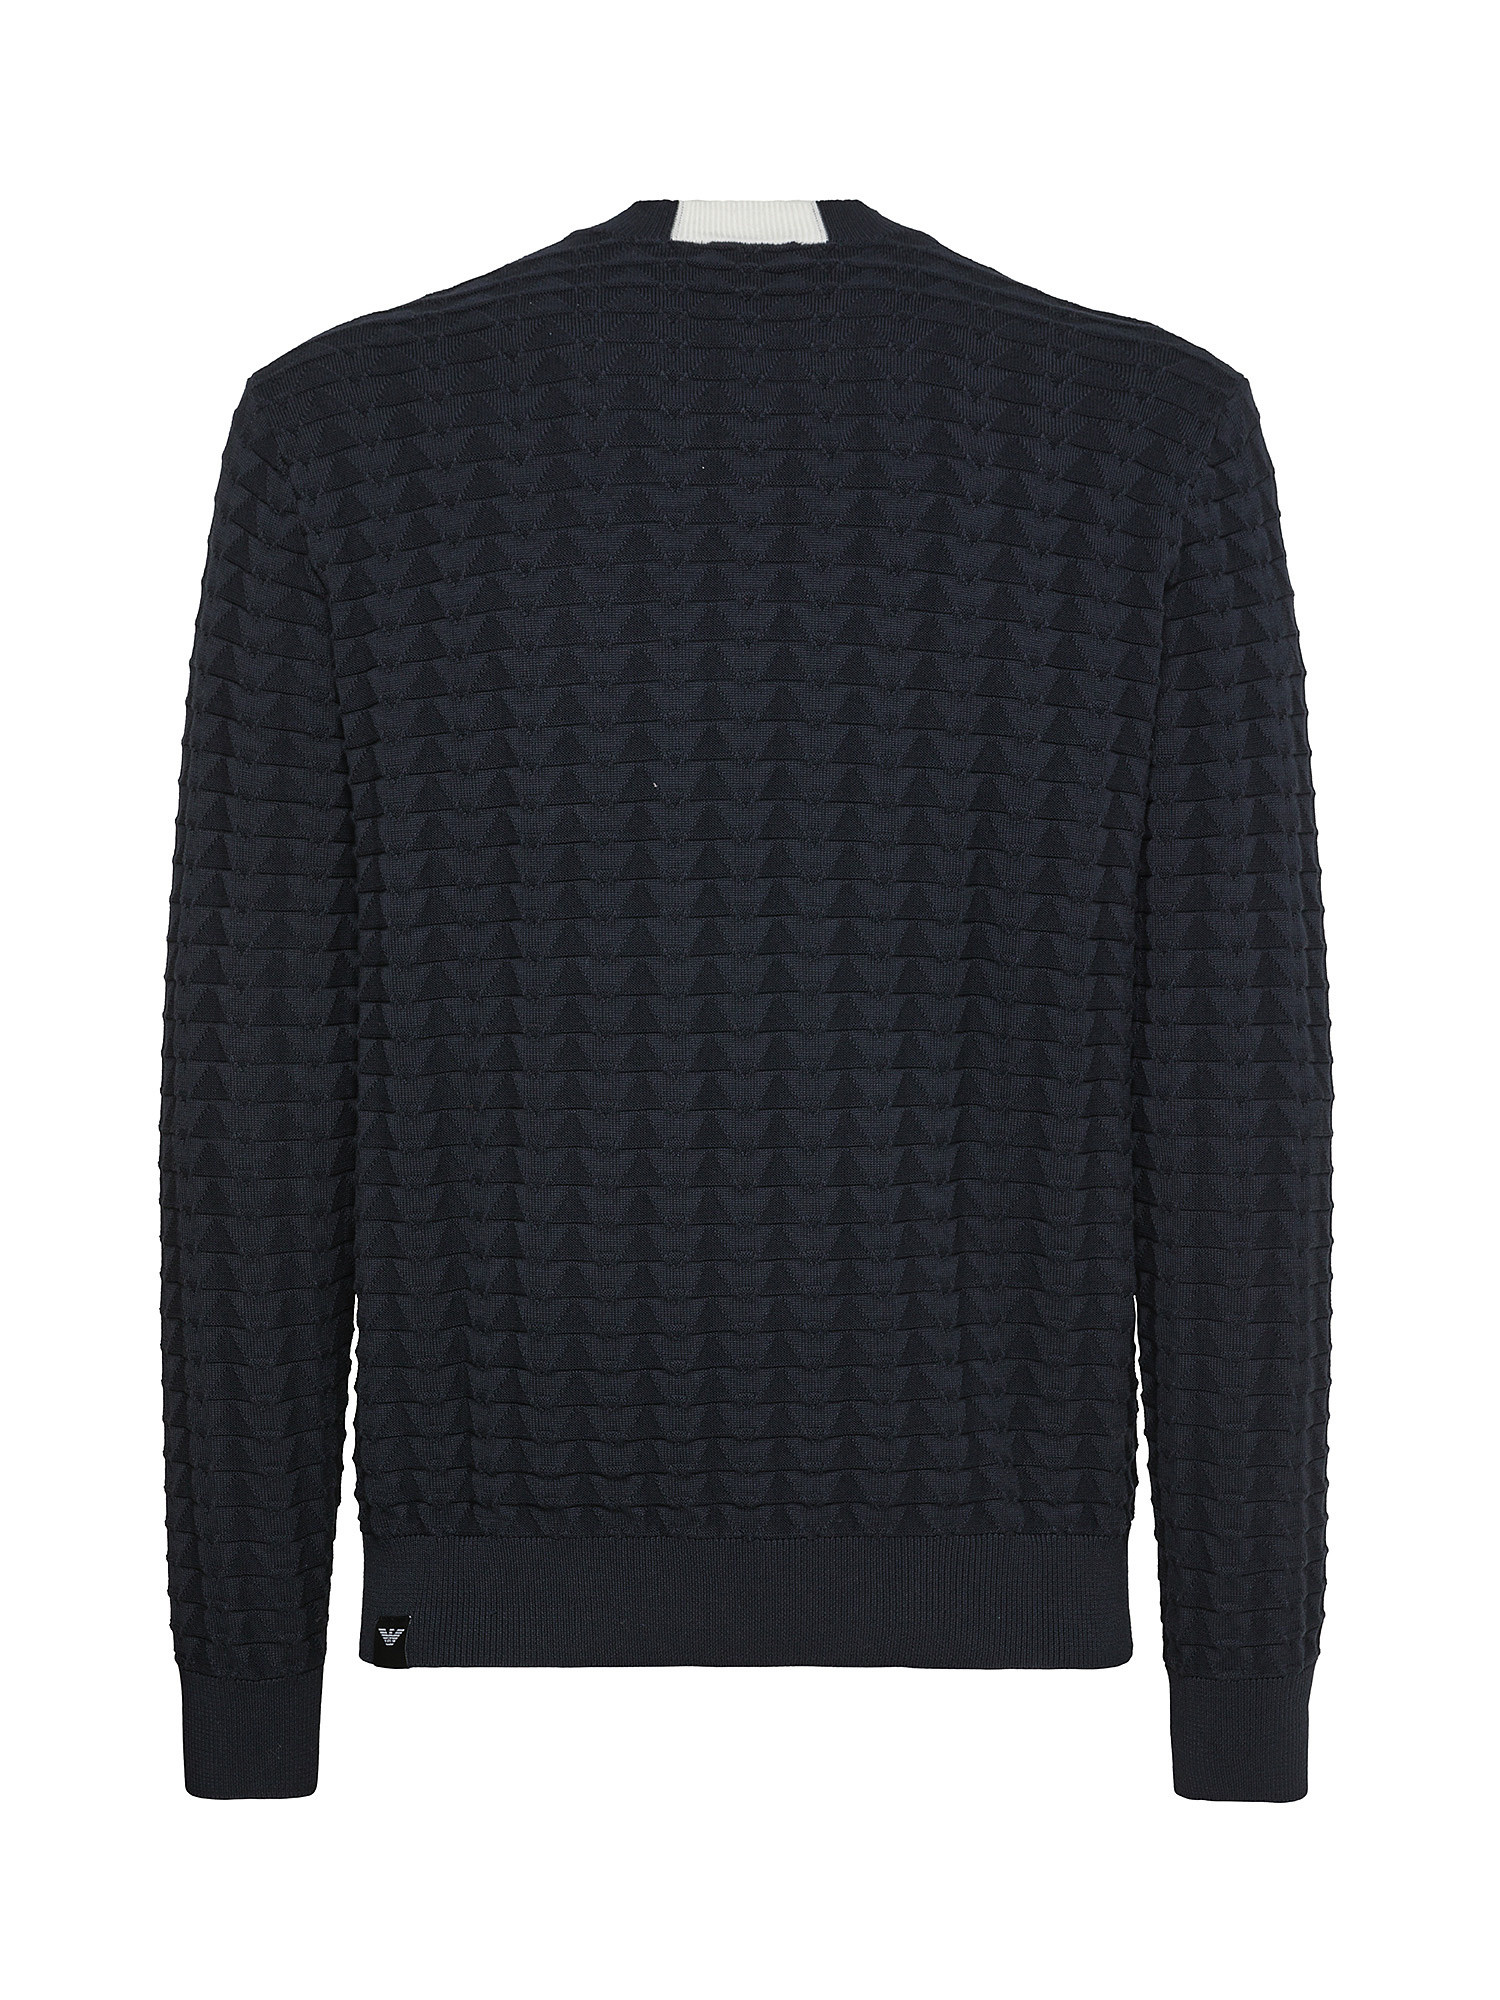 Emporio Armani - Pullover in cotone lavorato a maglia, Dark Blue, large image number 1